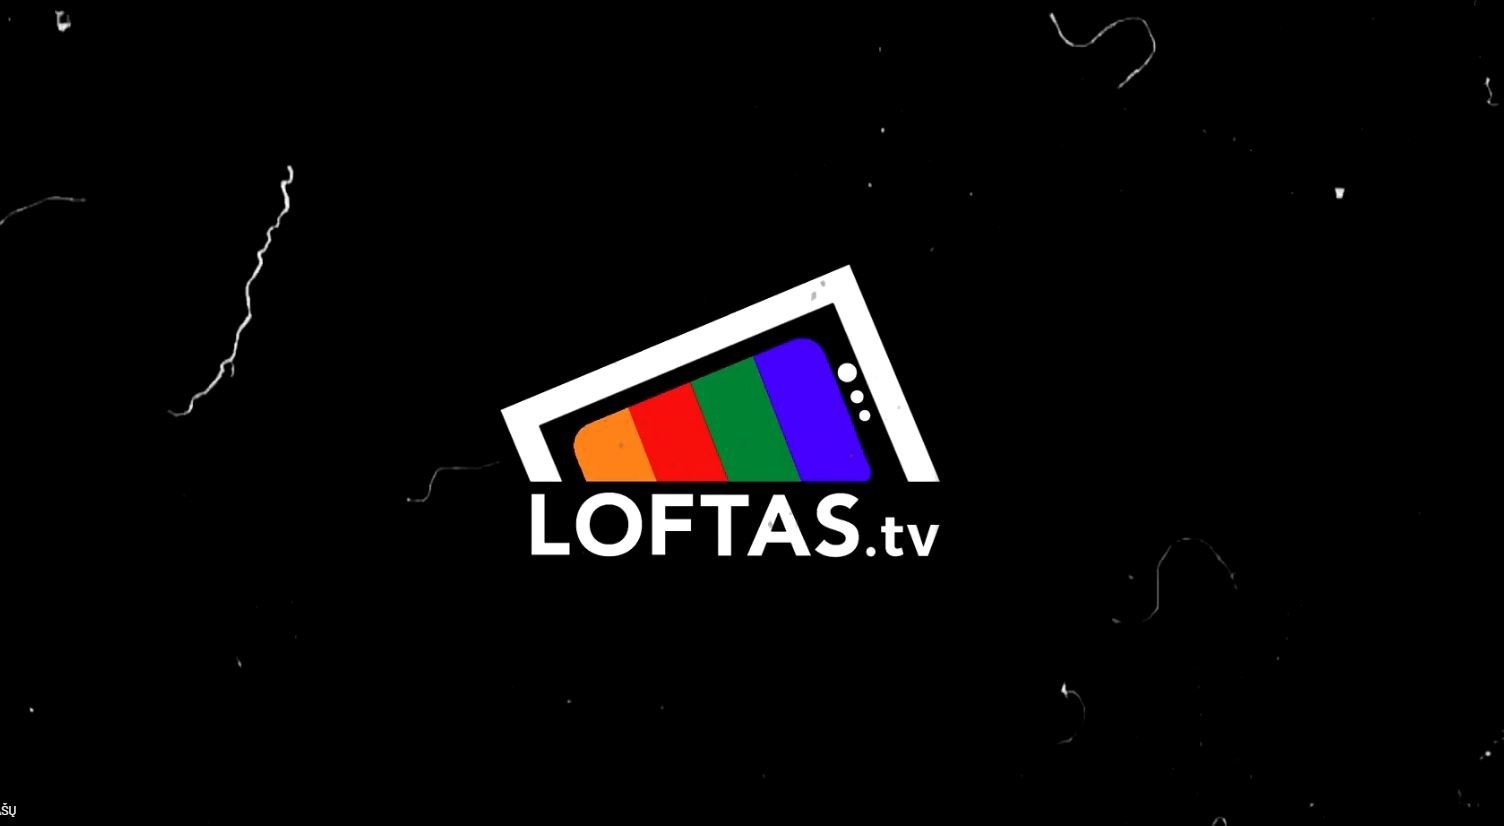 Loftas TV